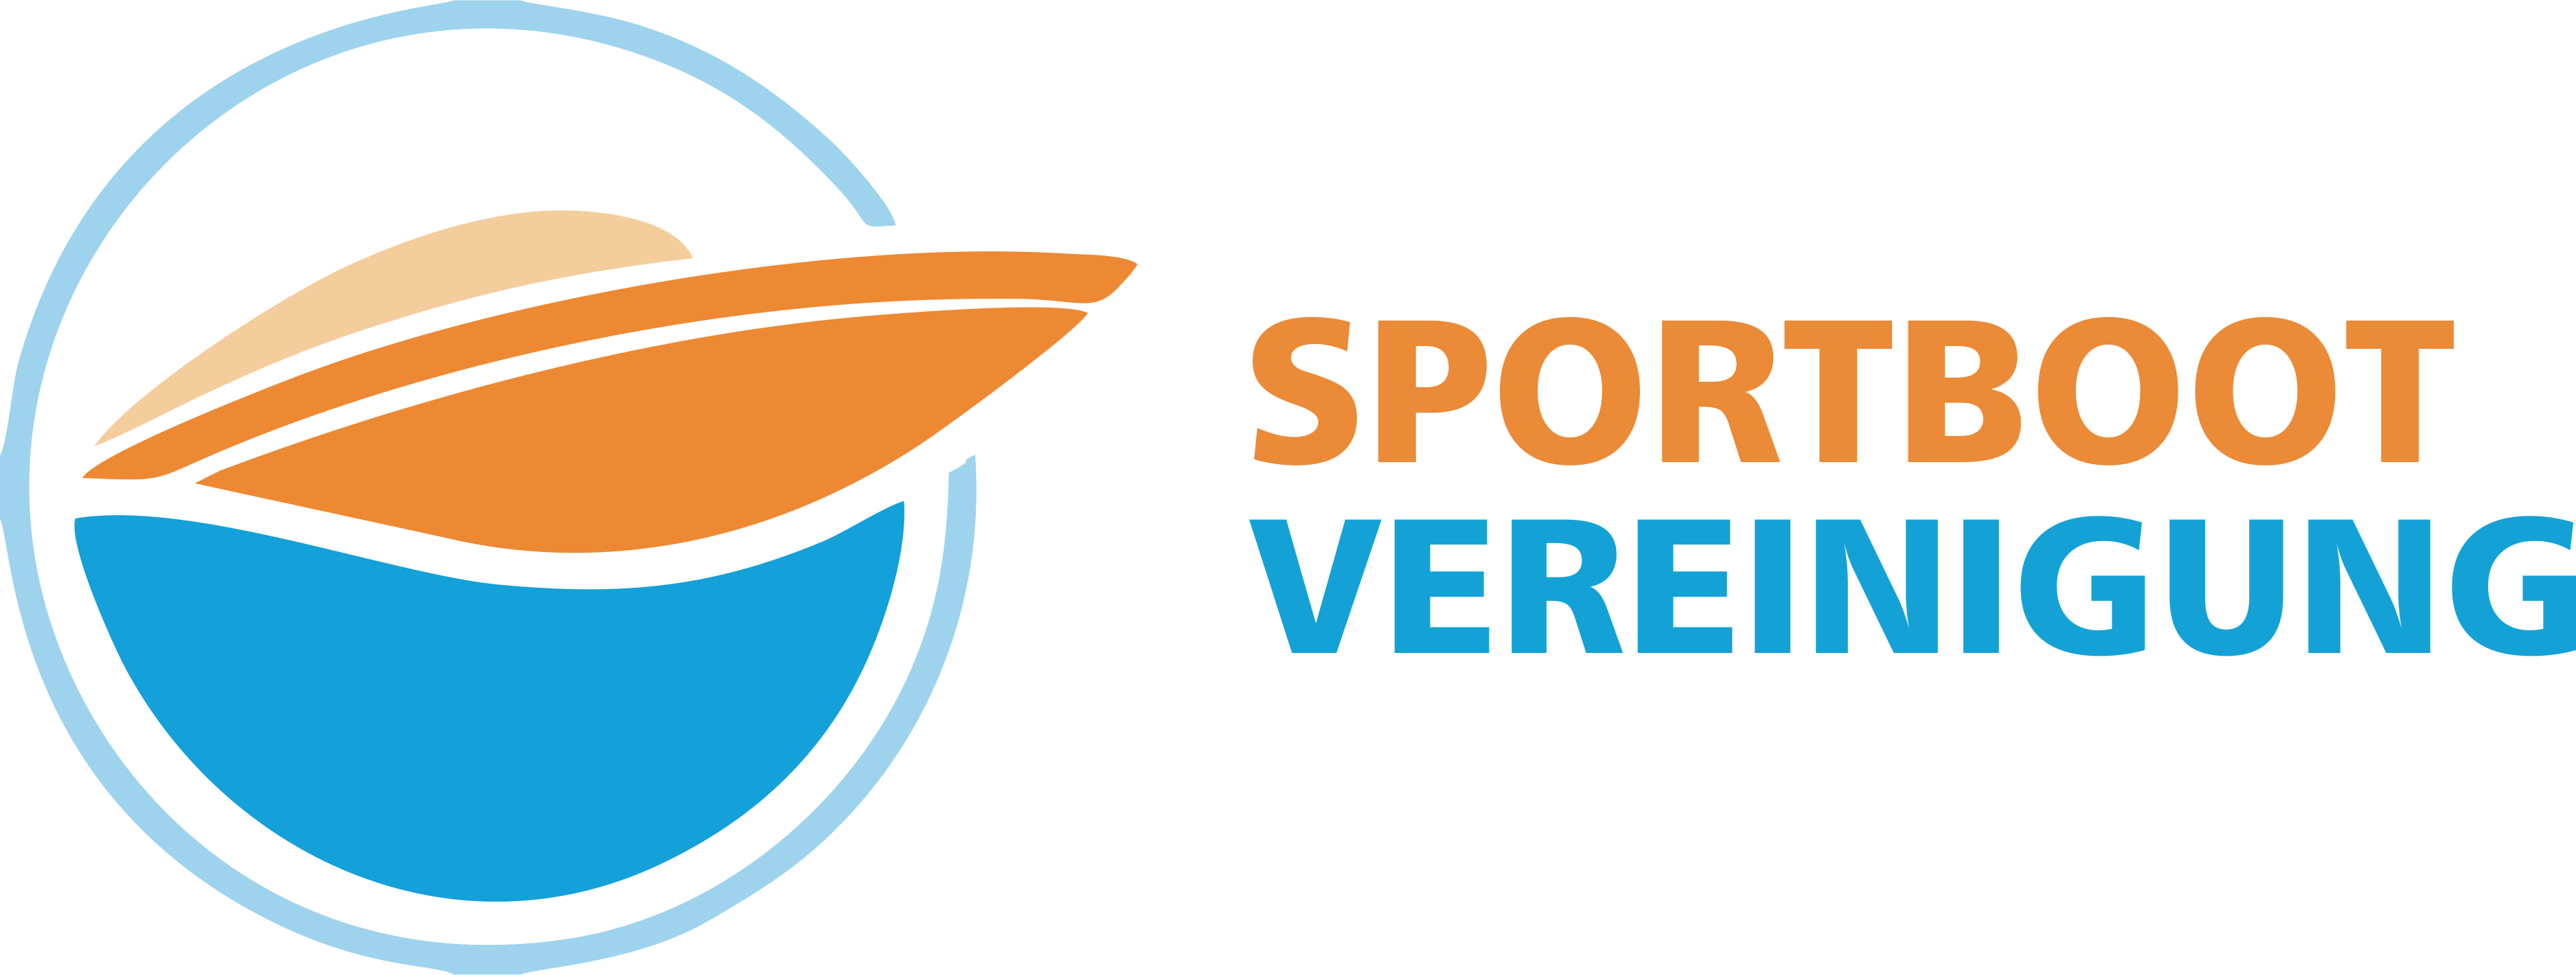 Sportbootvereinigung e.V. Logo